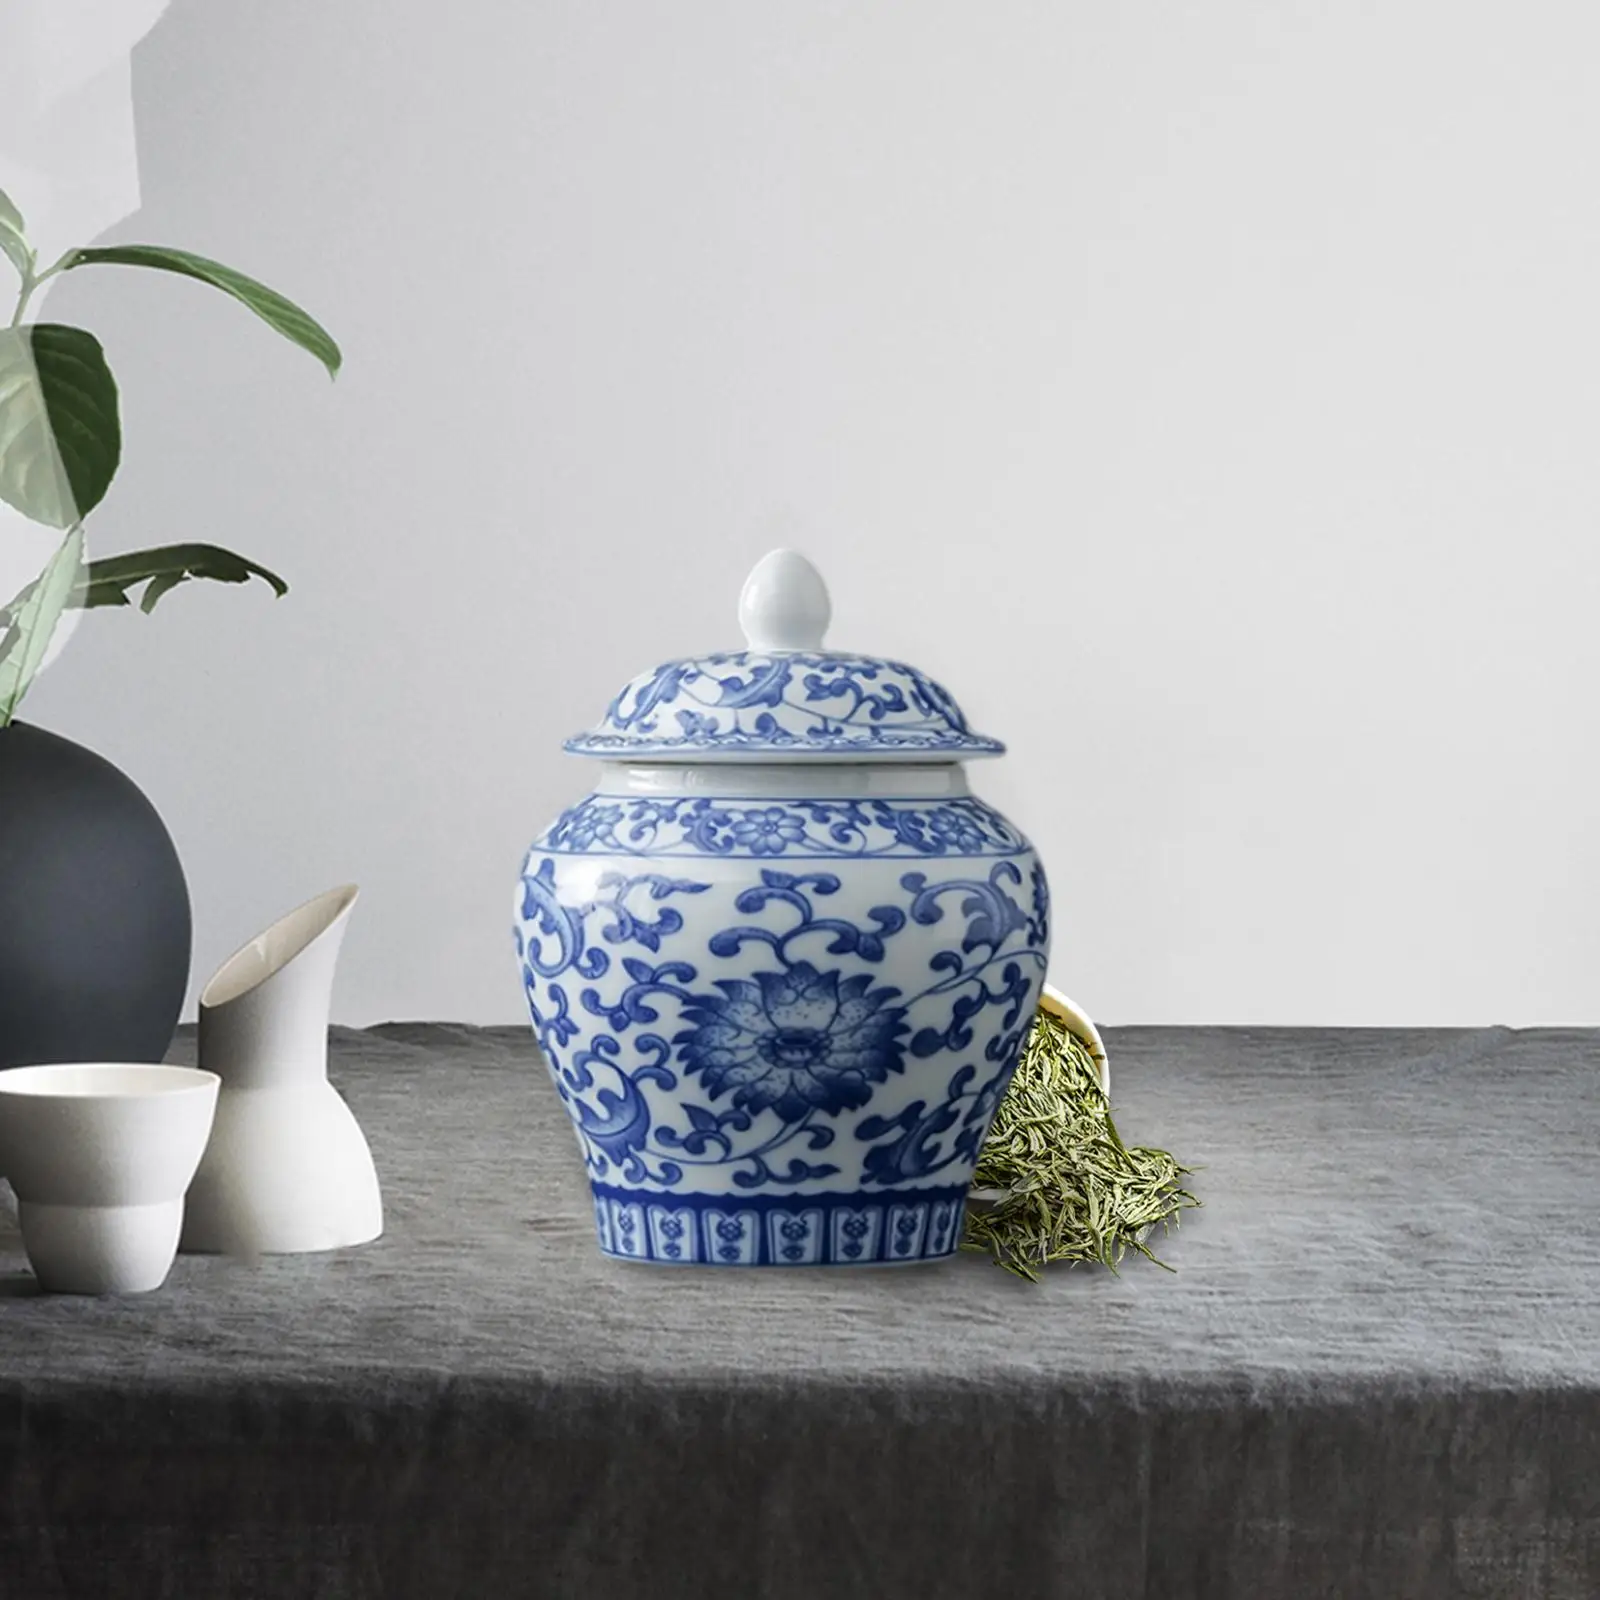 Ceramic Flower Vase Tea Canister Organizer Flower Arrangement Display Desk Versatile Porcelain Jar Fine Glaze Finish Traditional